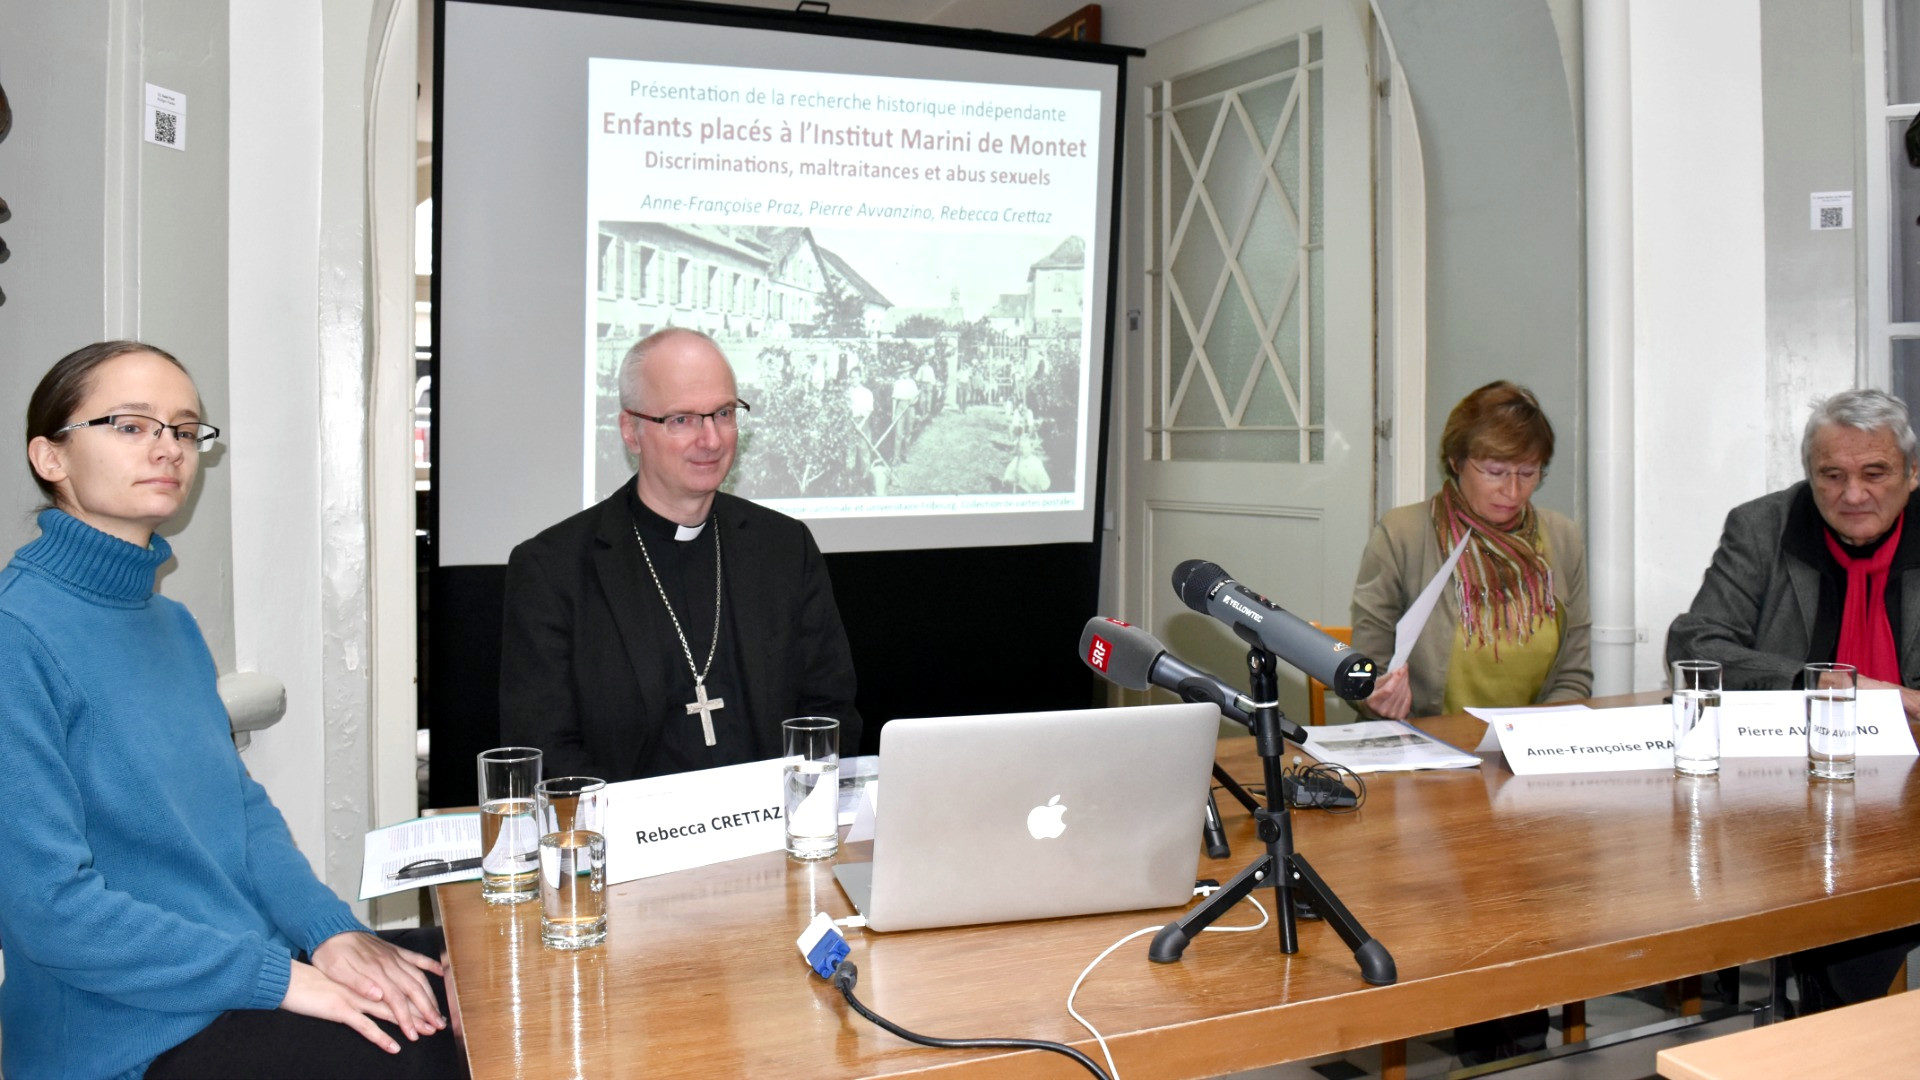 Auseinandersetzung mit dem Thema "Missbrauch": Der Westschweizer Bischof Charles Morerod im Januar 2016 bei der Präsentation der Studie über das Institut Marini.